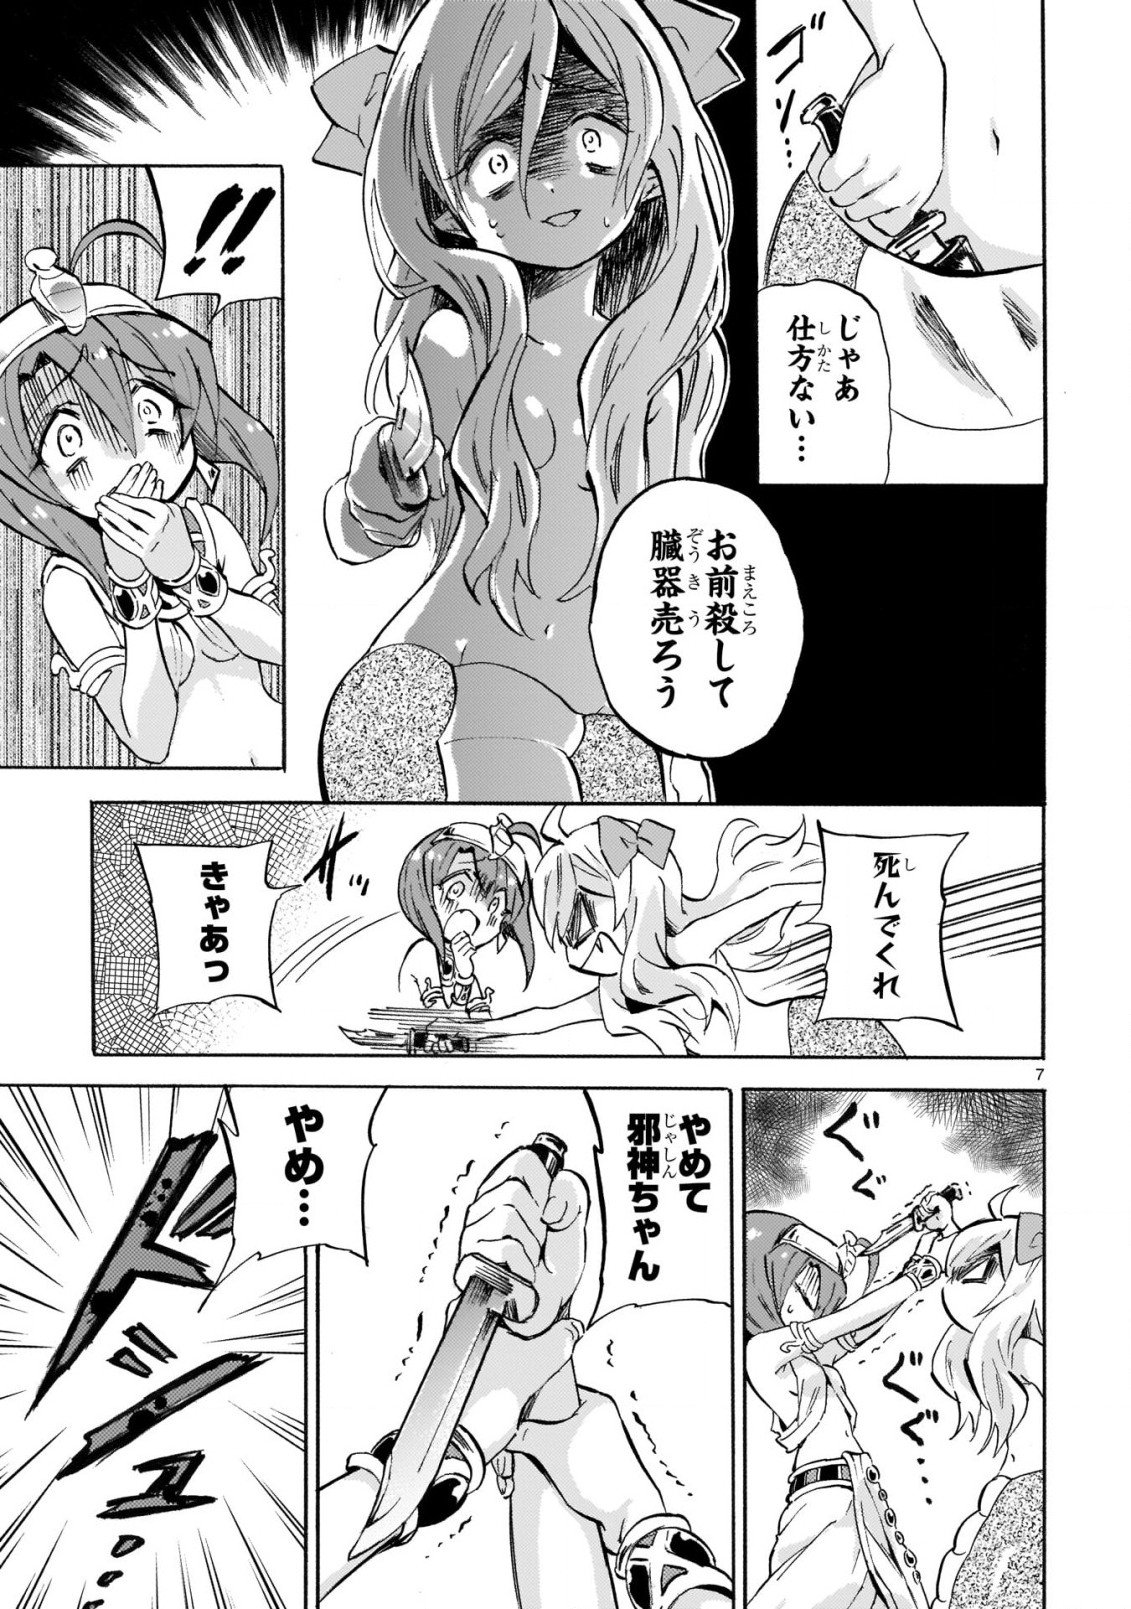 Jashin-chan Dropkick - Chapter 224 - Page 8